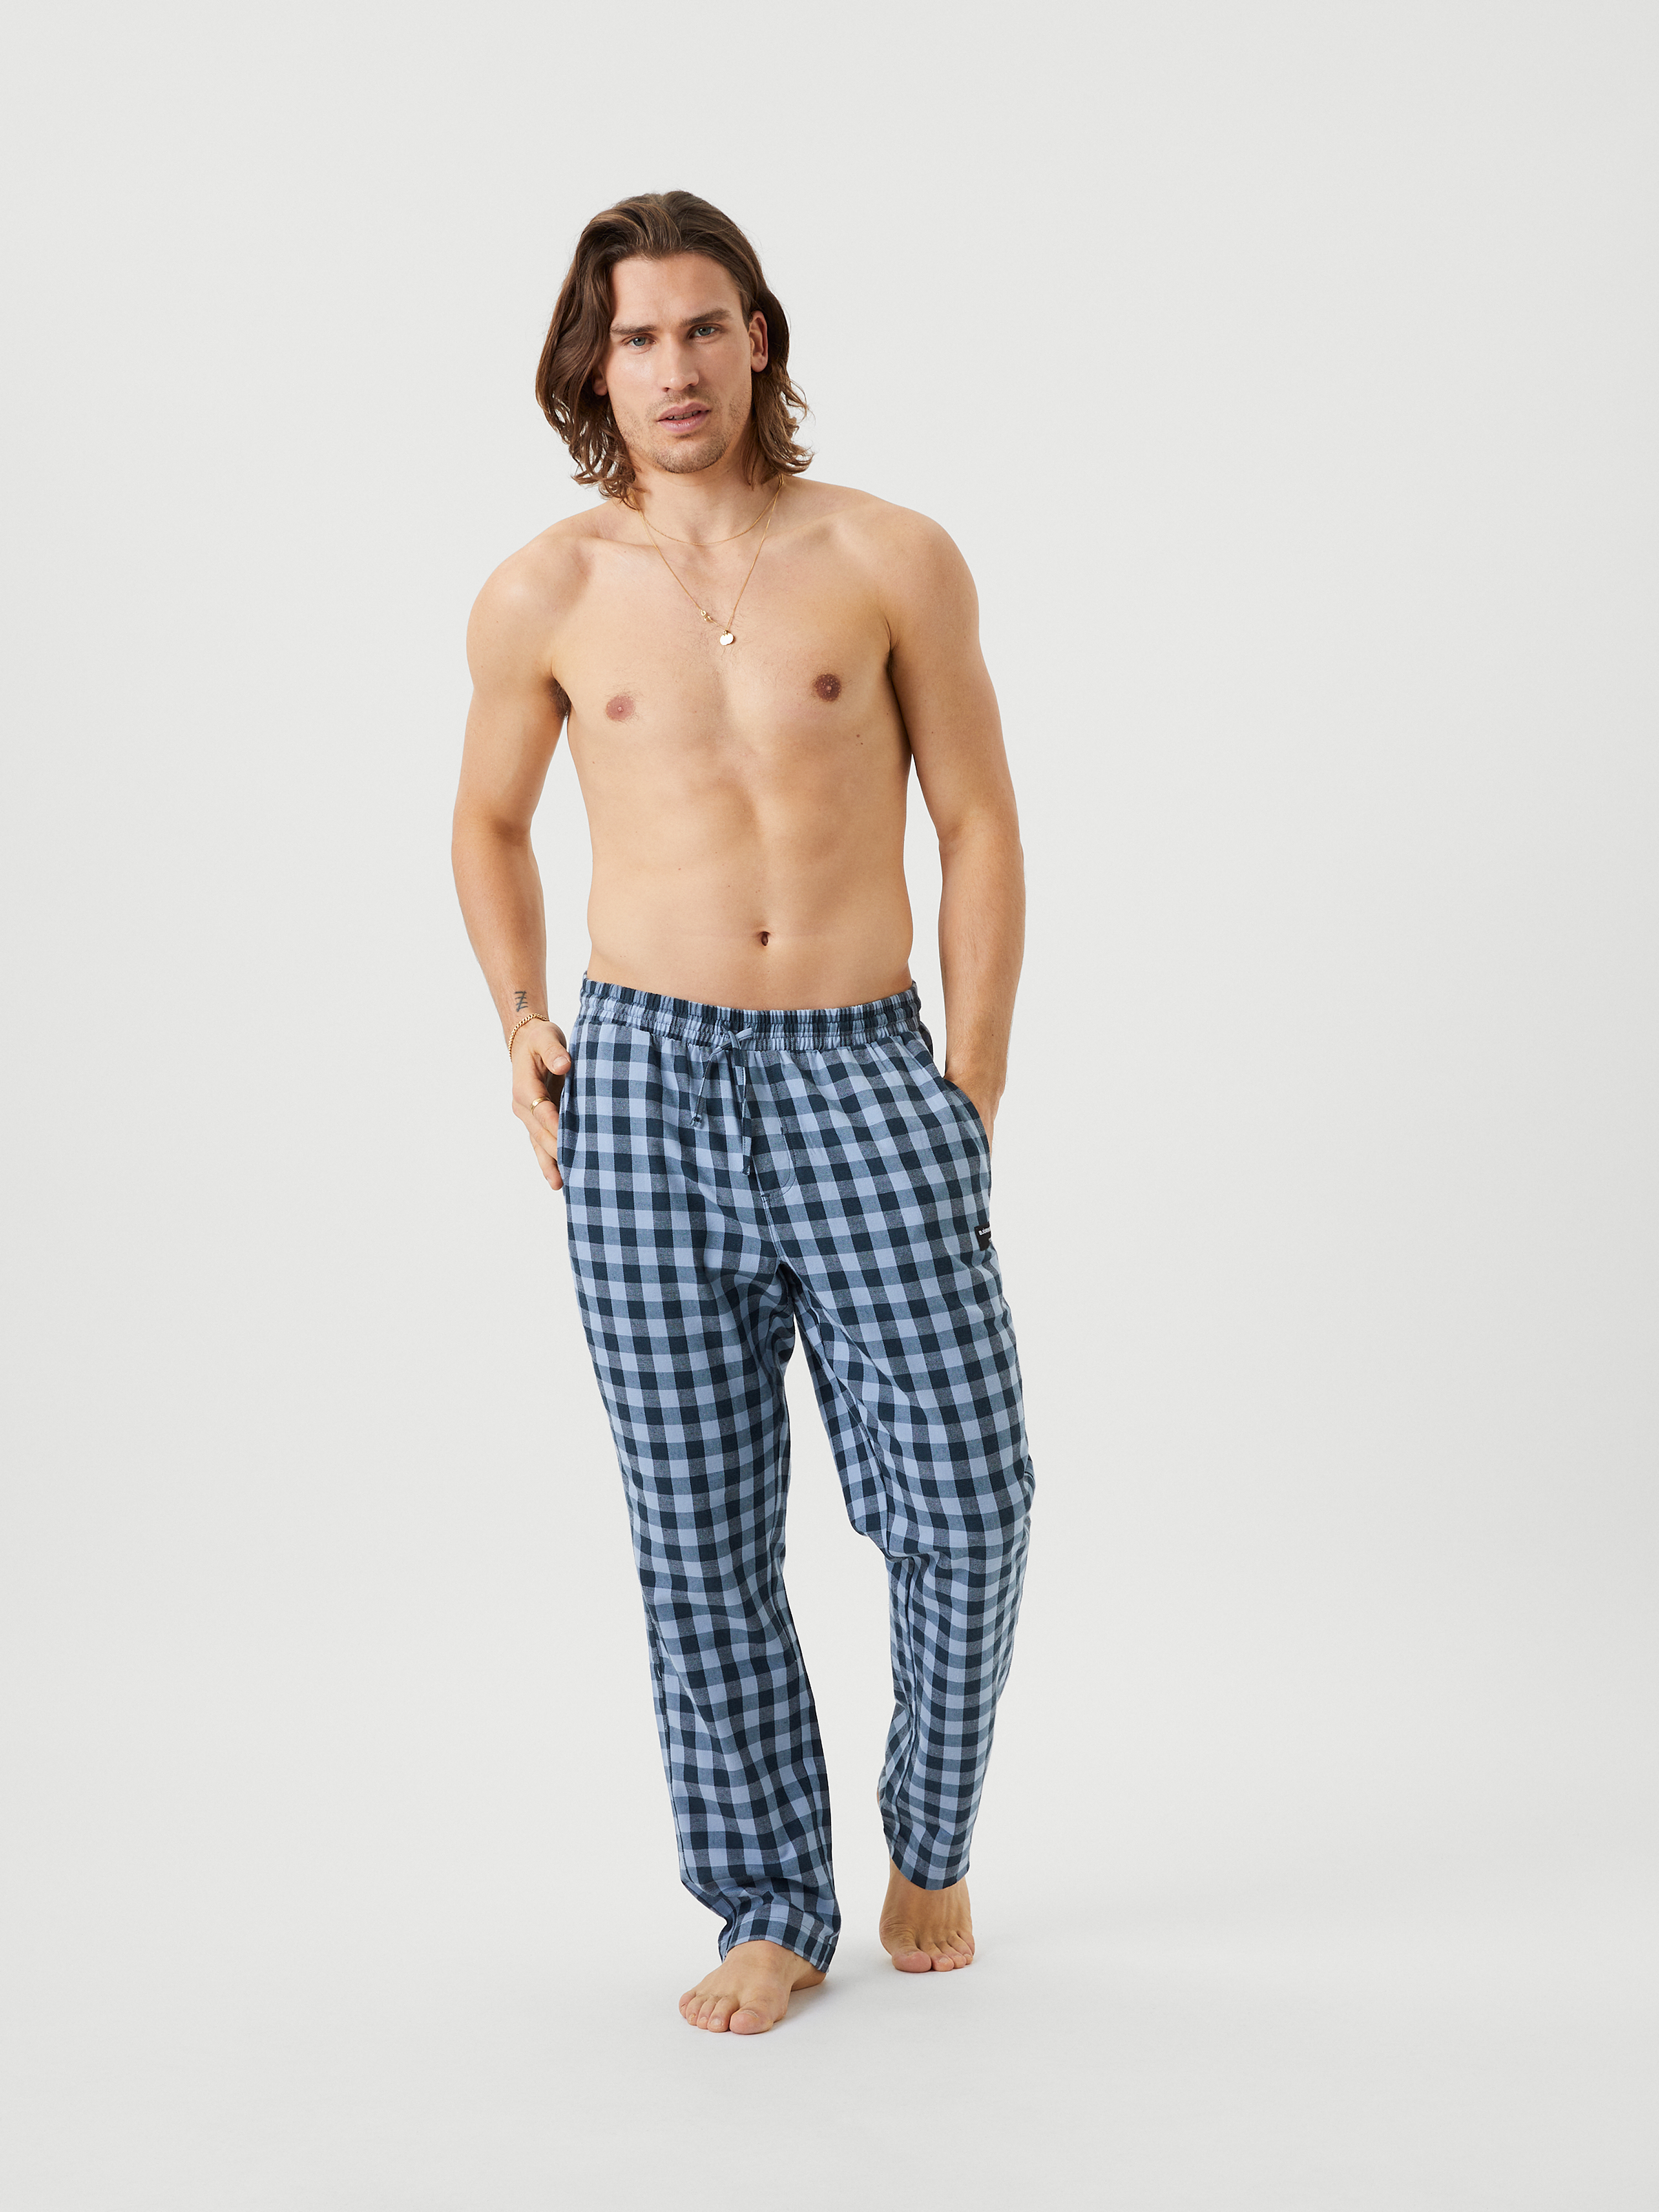 Evalueerbaar schandaal Schildknaap Core Pyjama Pants - Multi | Men | Björn Borg